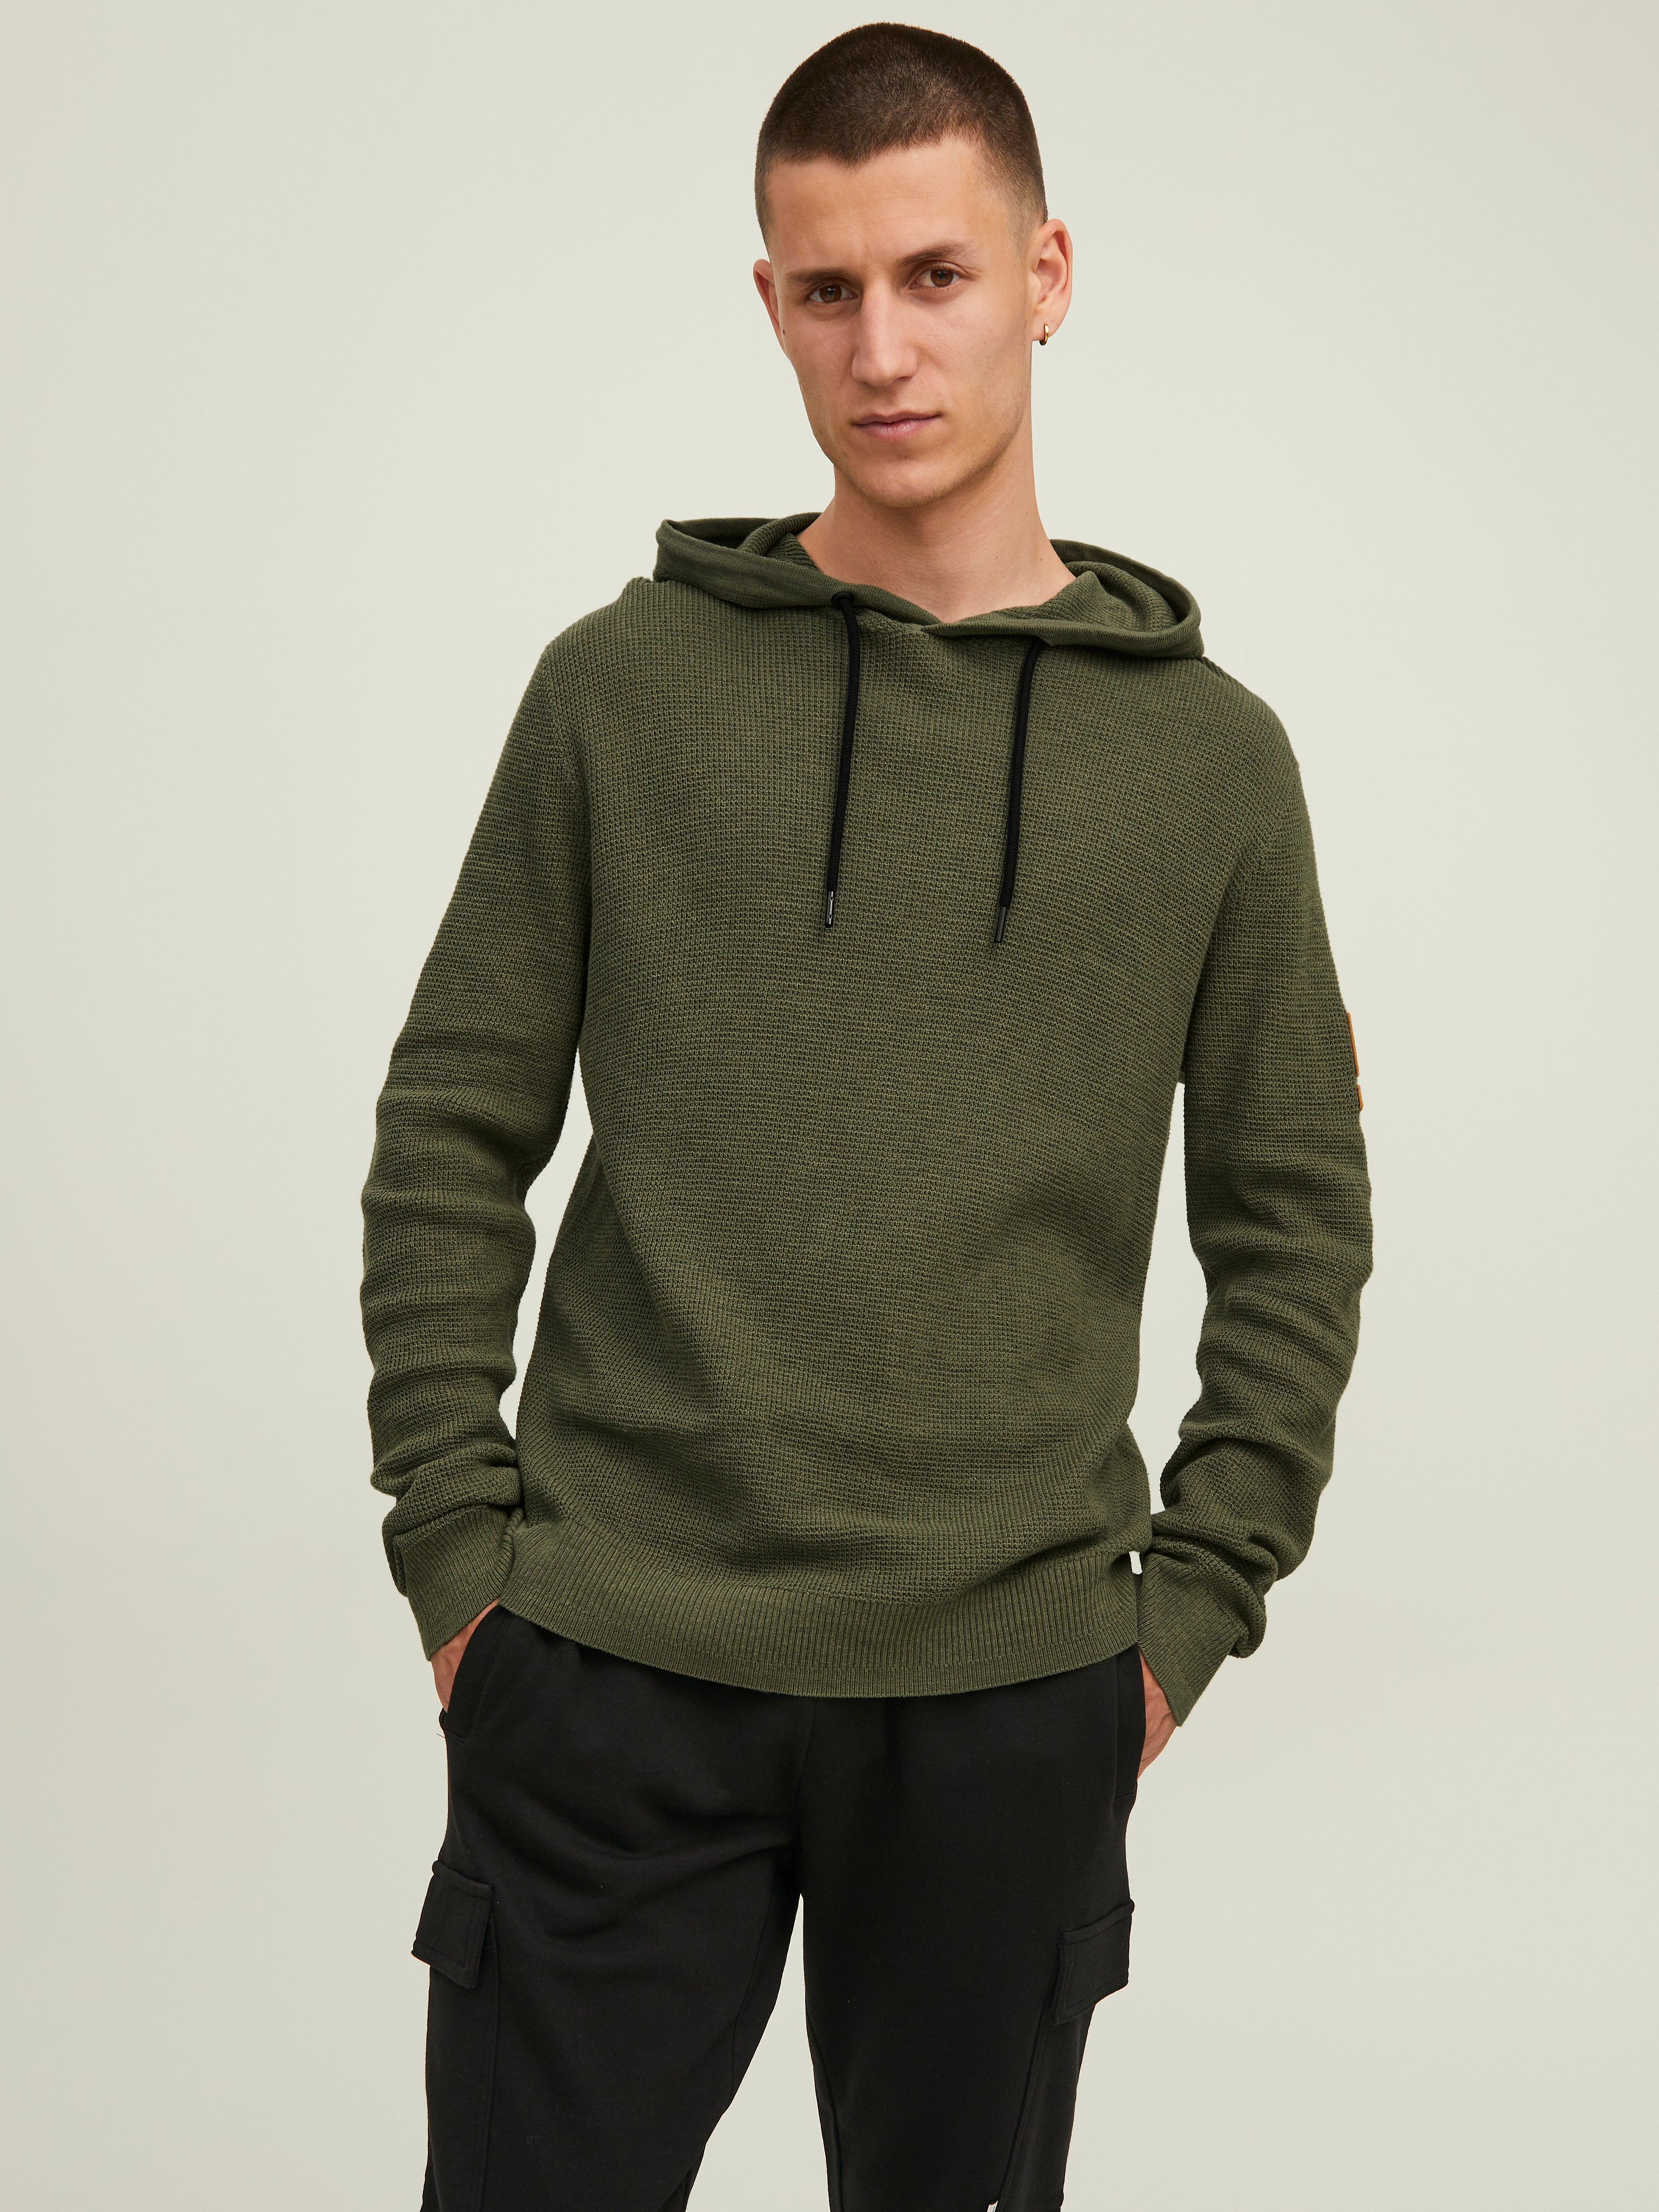 HERREN Pullovers & Sweatshirts Casual Grün L Jack & Jones sweatshirt Rabatt 93 % 